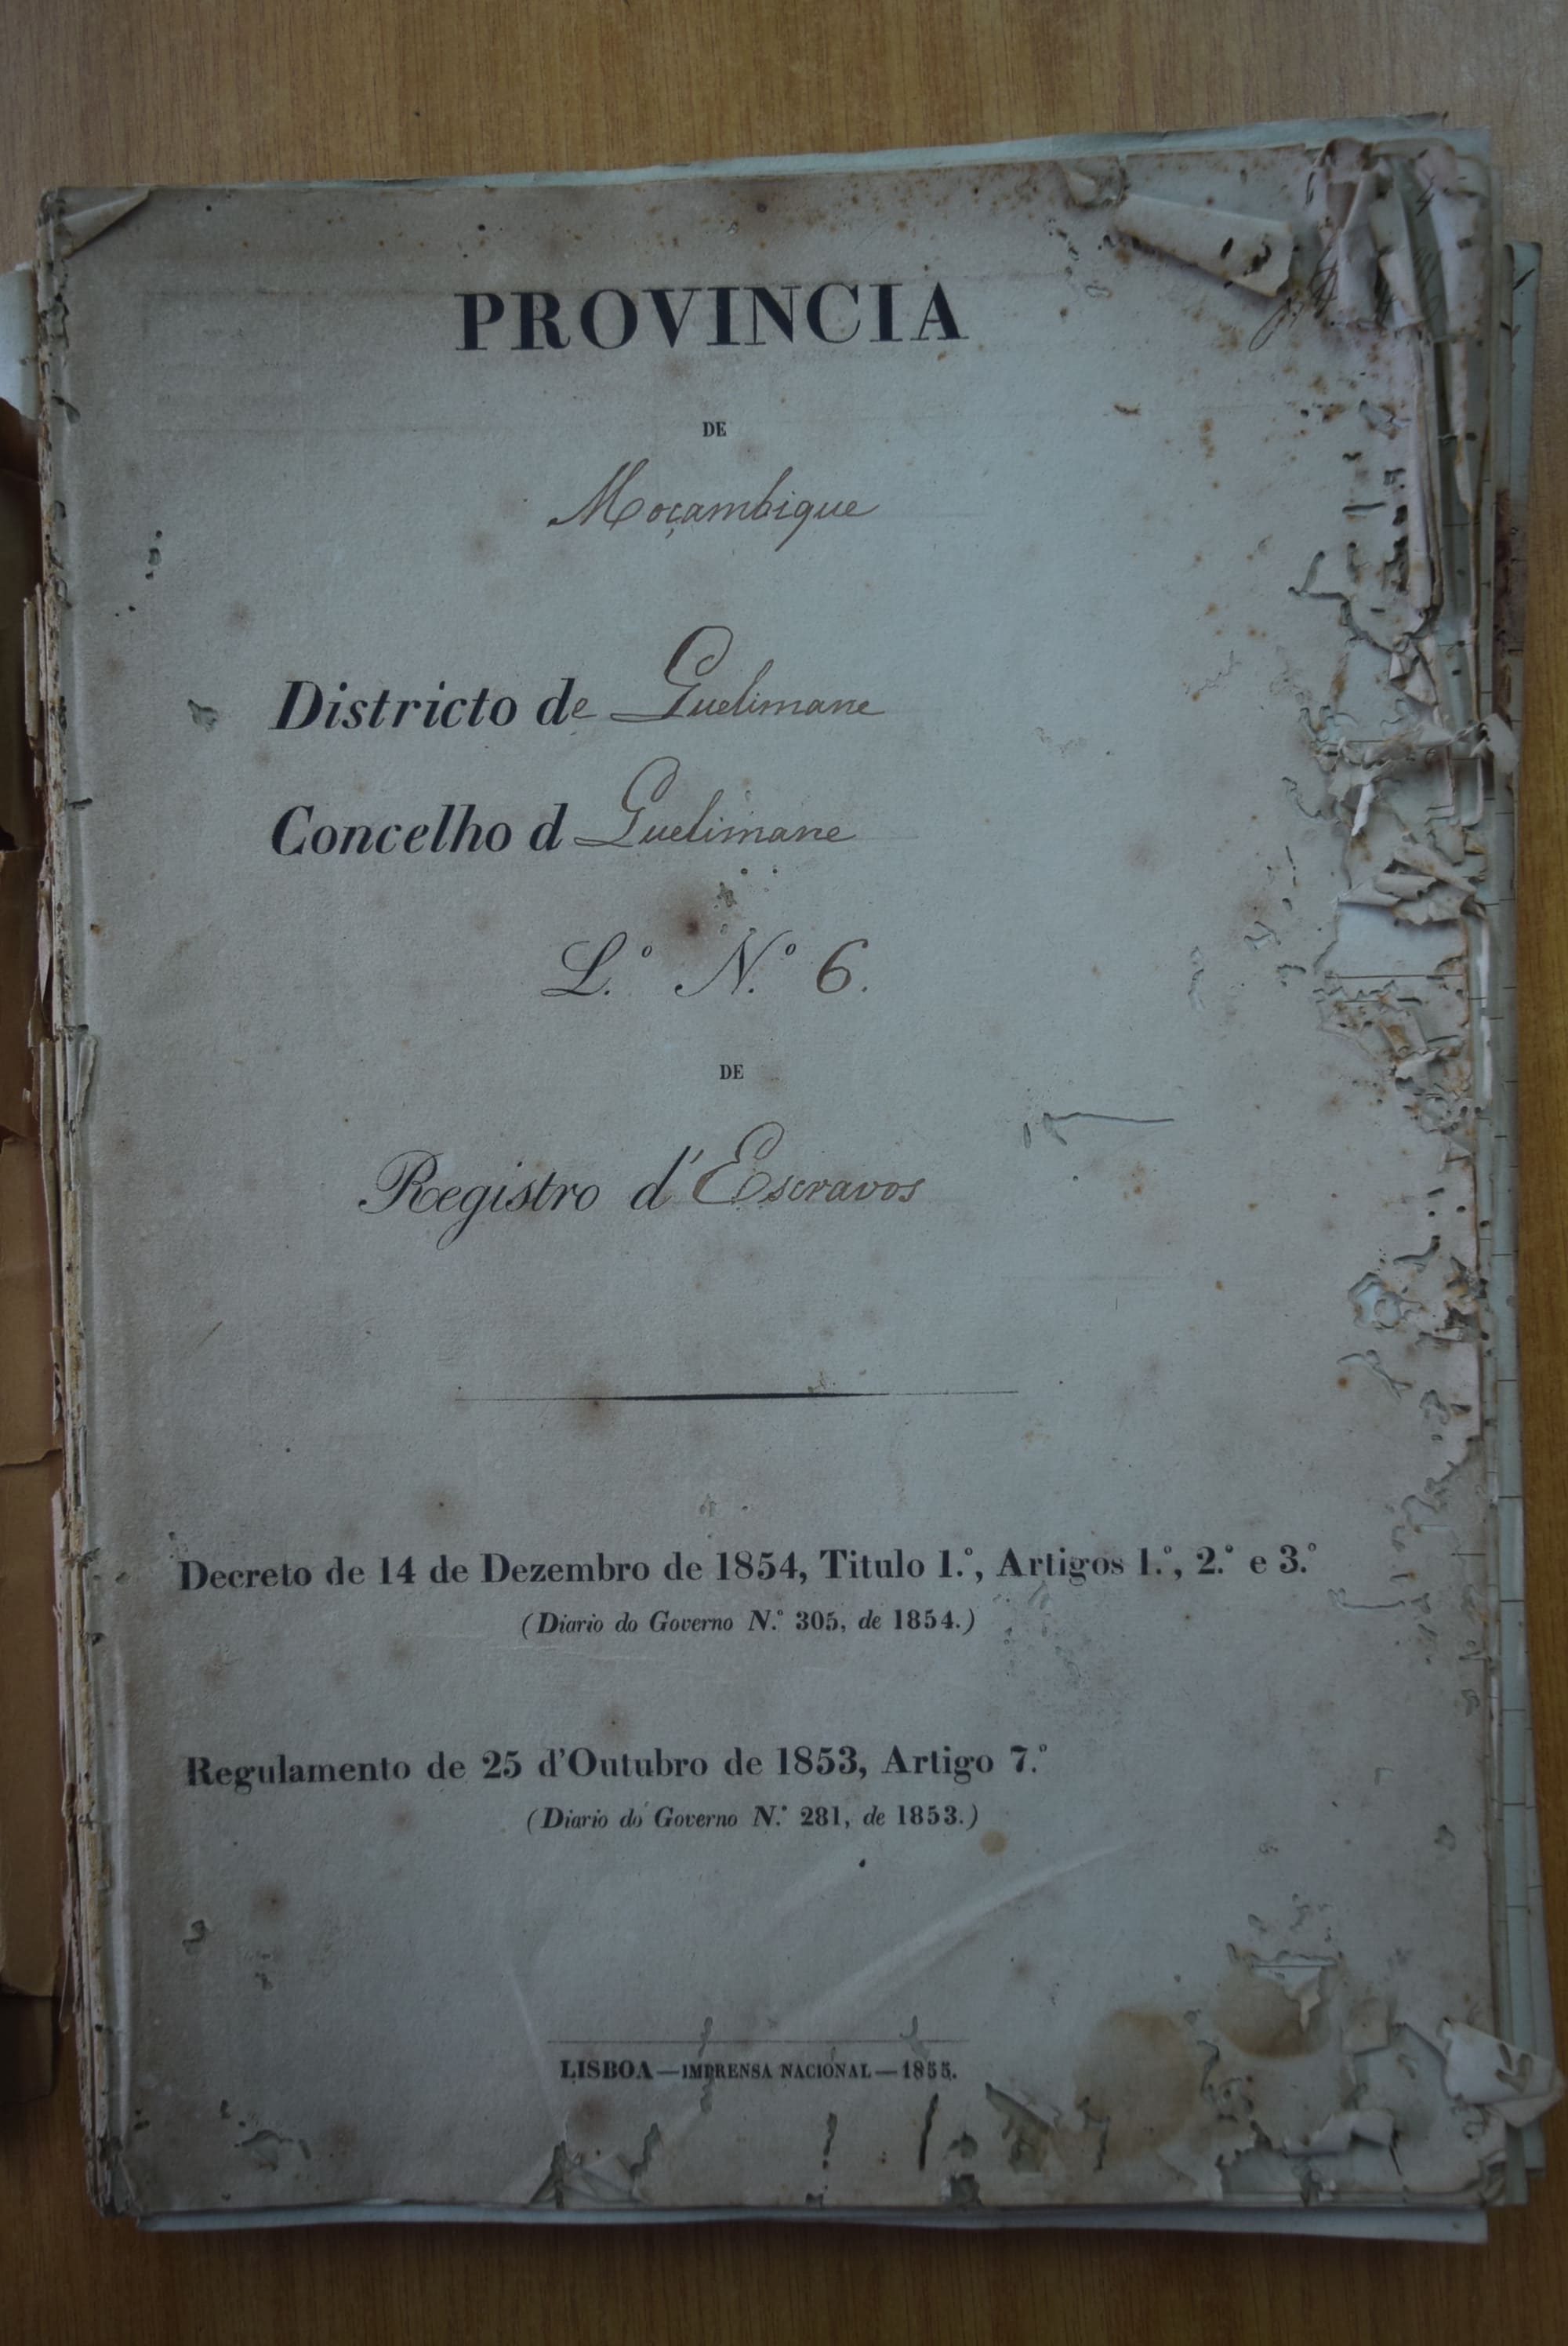 Register of Slaves of Quelimane